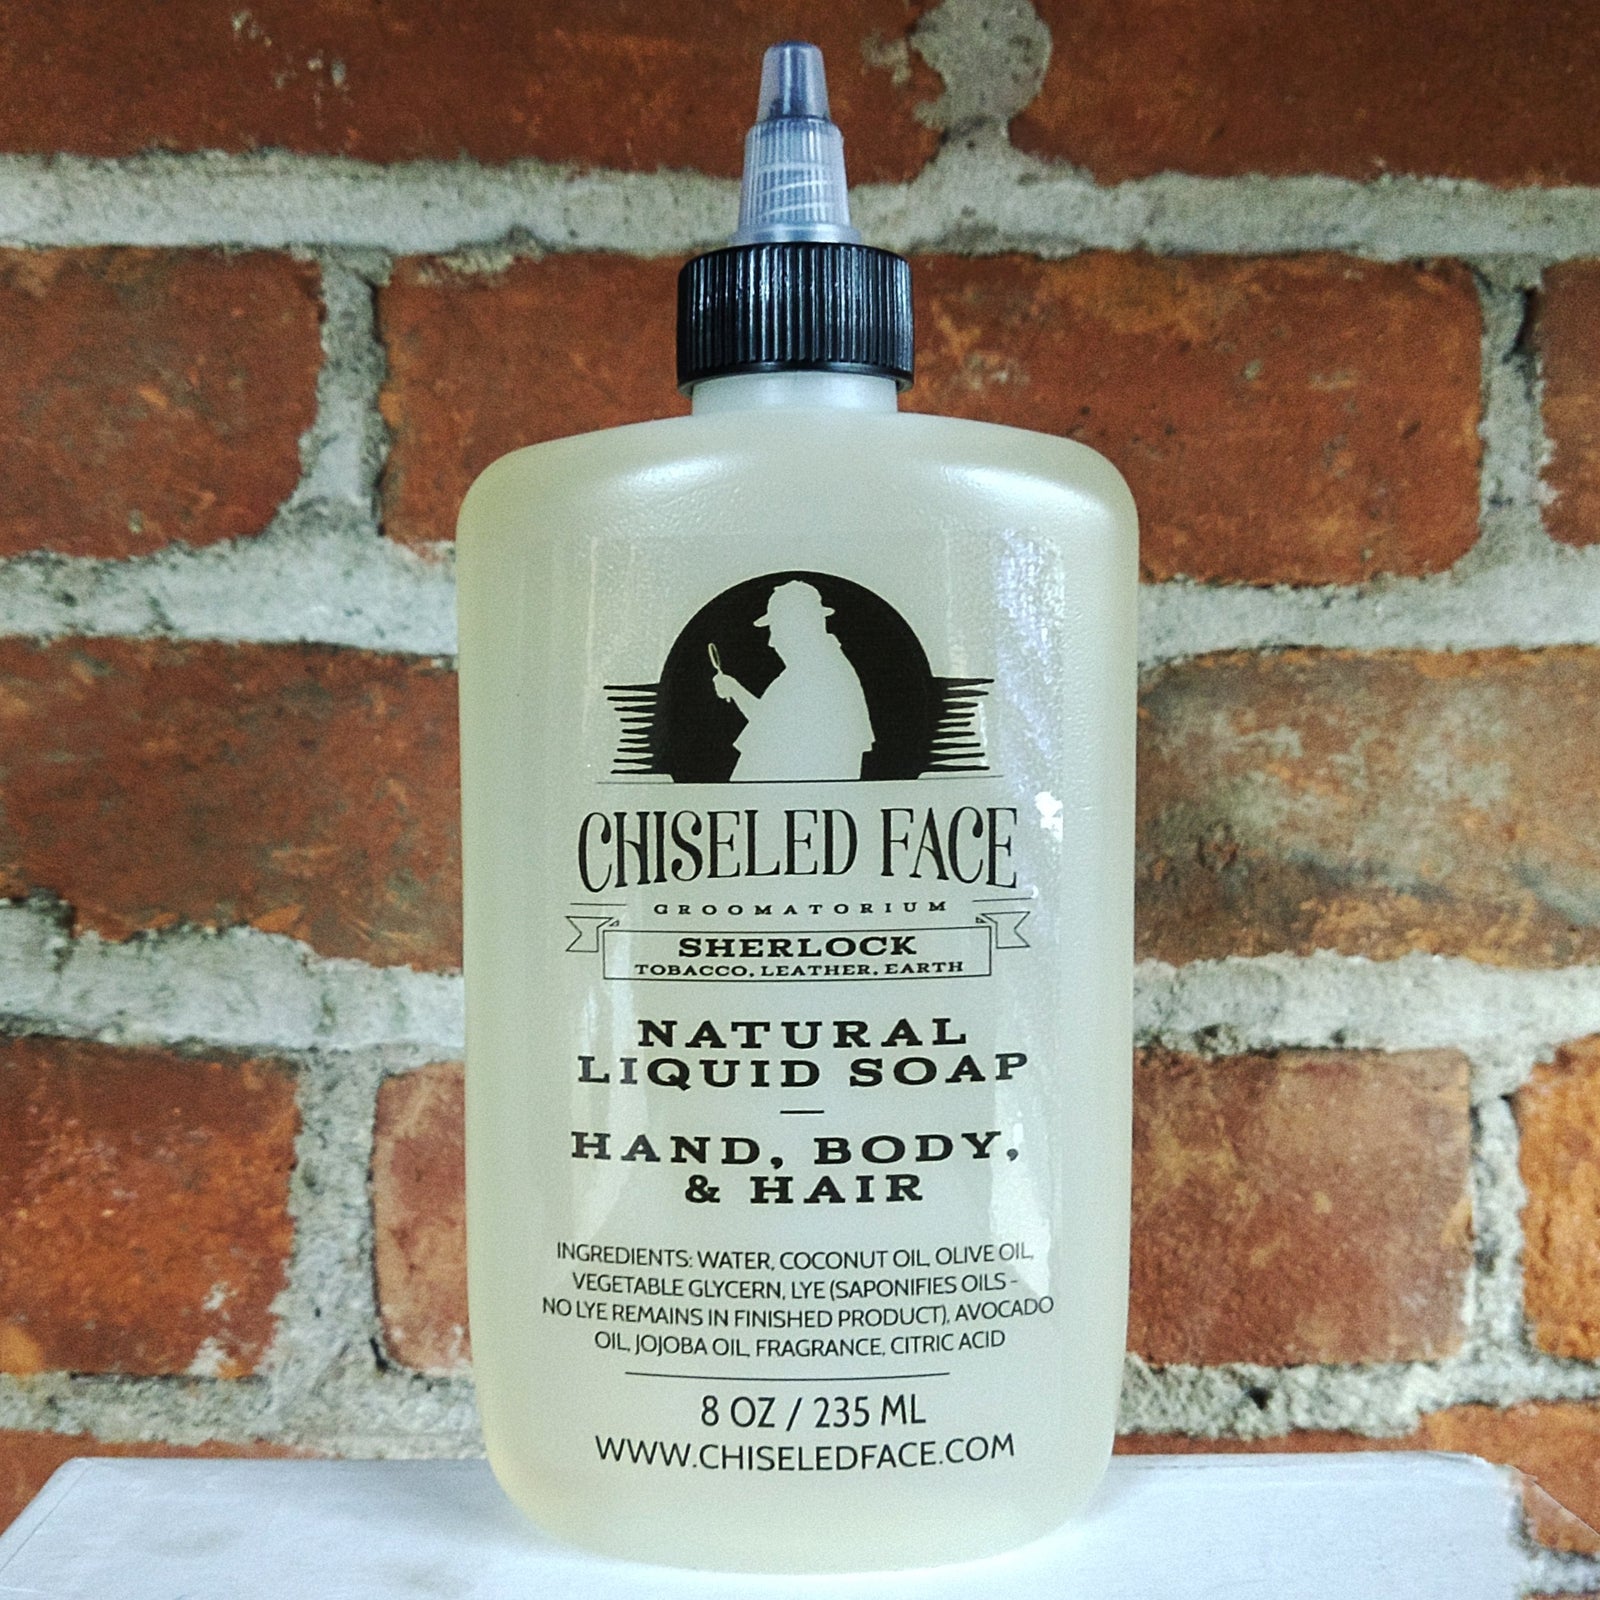 Chiseled Face - Sherlock Liquid Soap